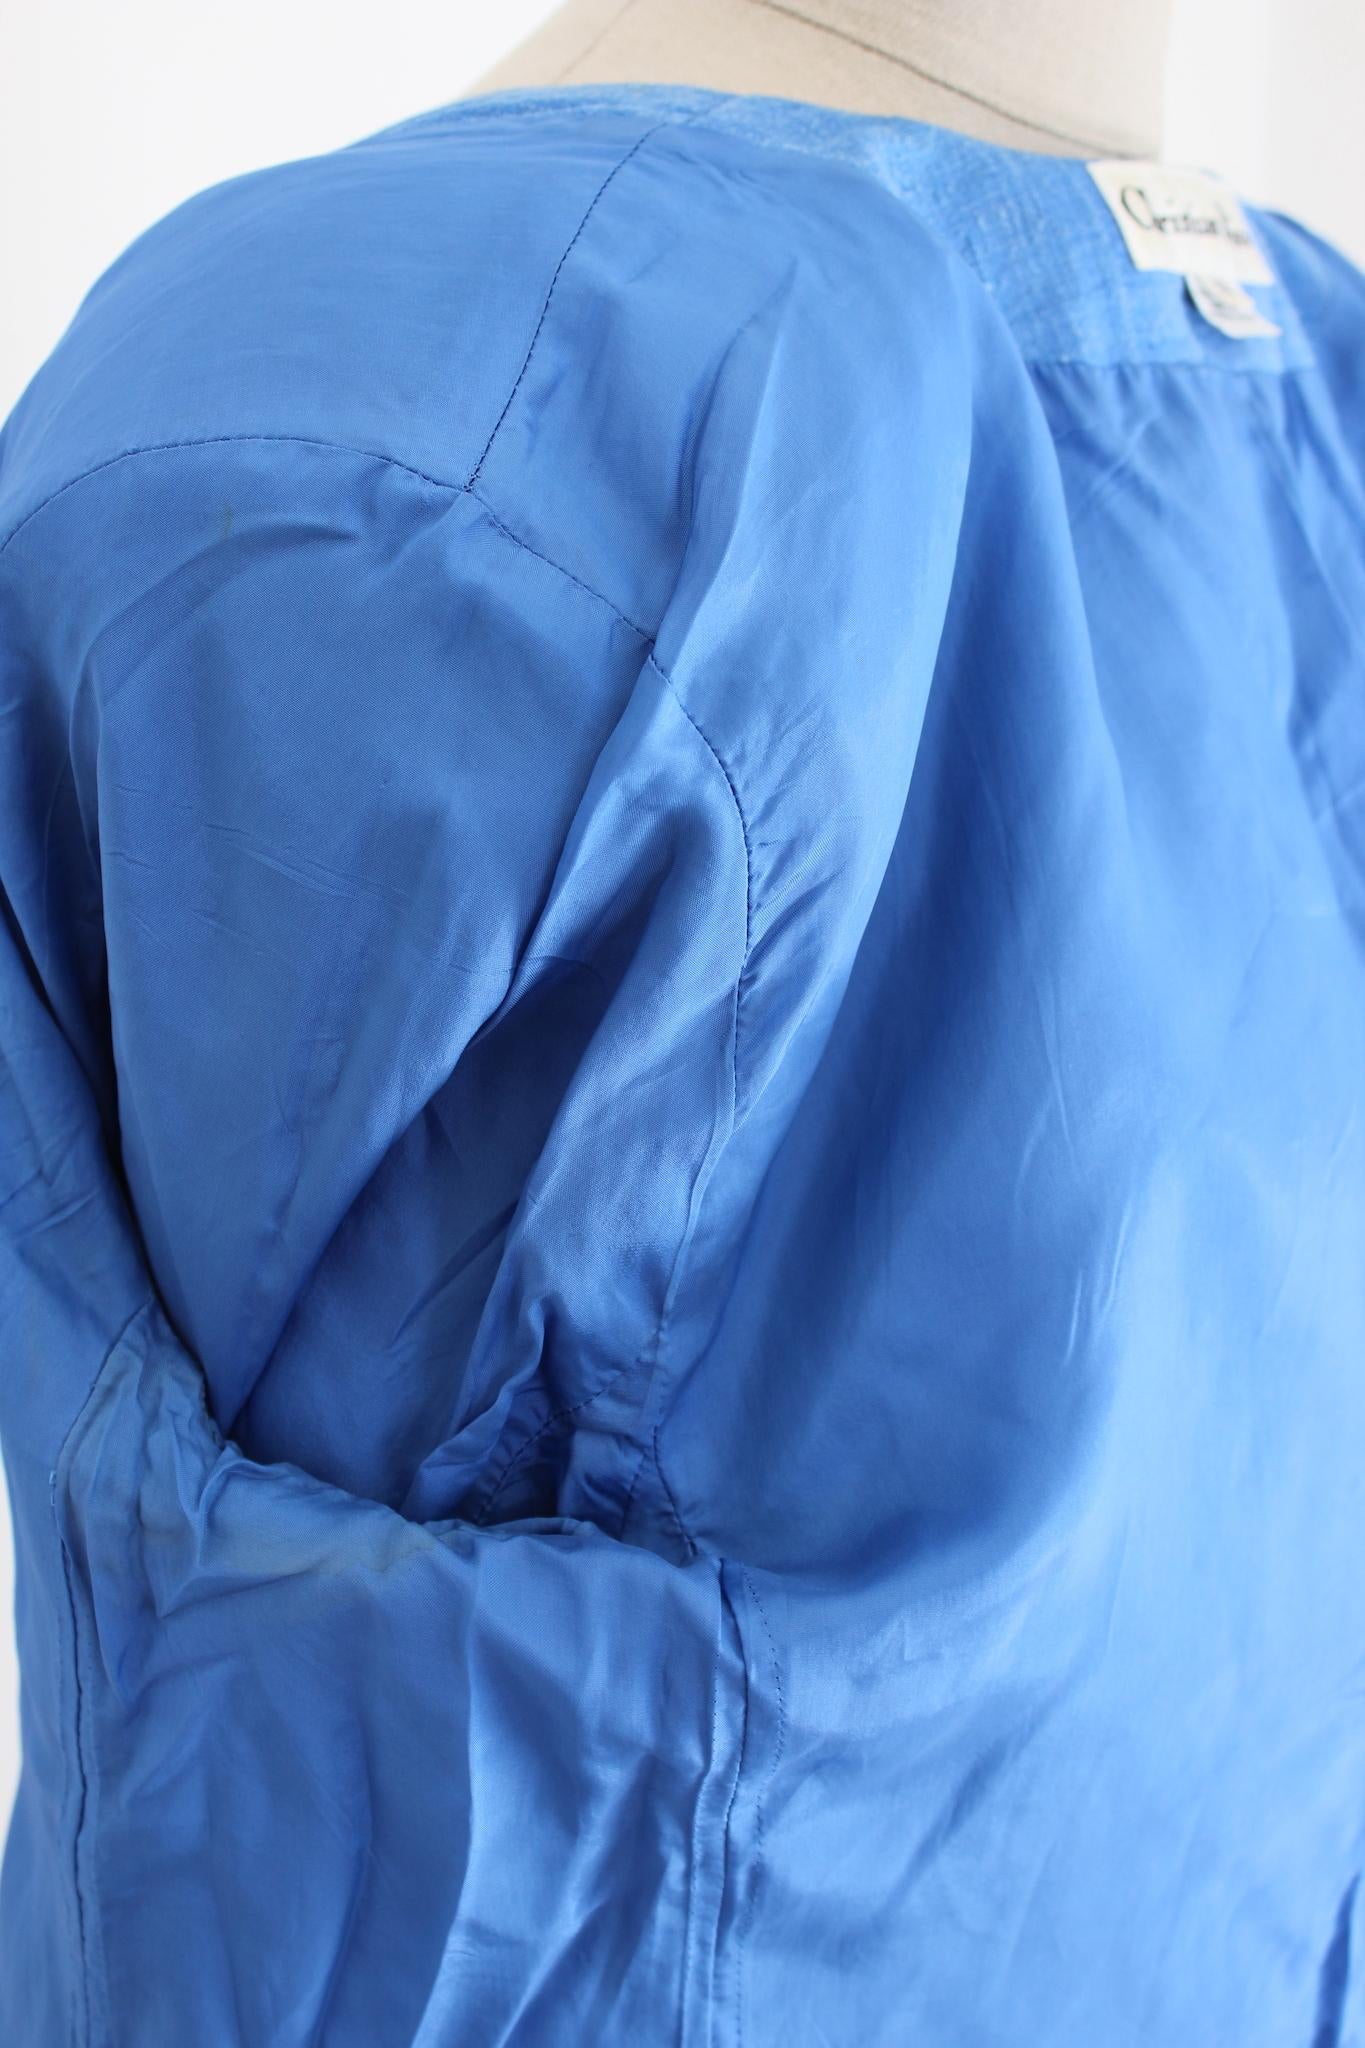 Ajoutez une touche de style vintage à votre garde-robe avec cette veste classique bleu clair de Christian Dior. Fabriquée à partir d'un mélange de lin et de coton, cette veste est parfaite pour le printemps et l'été, car elle est légère et